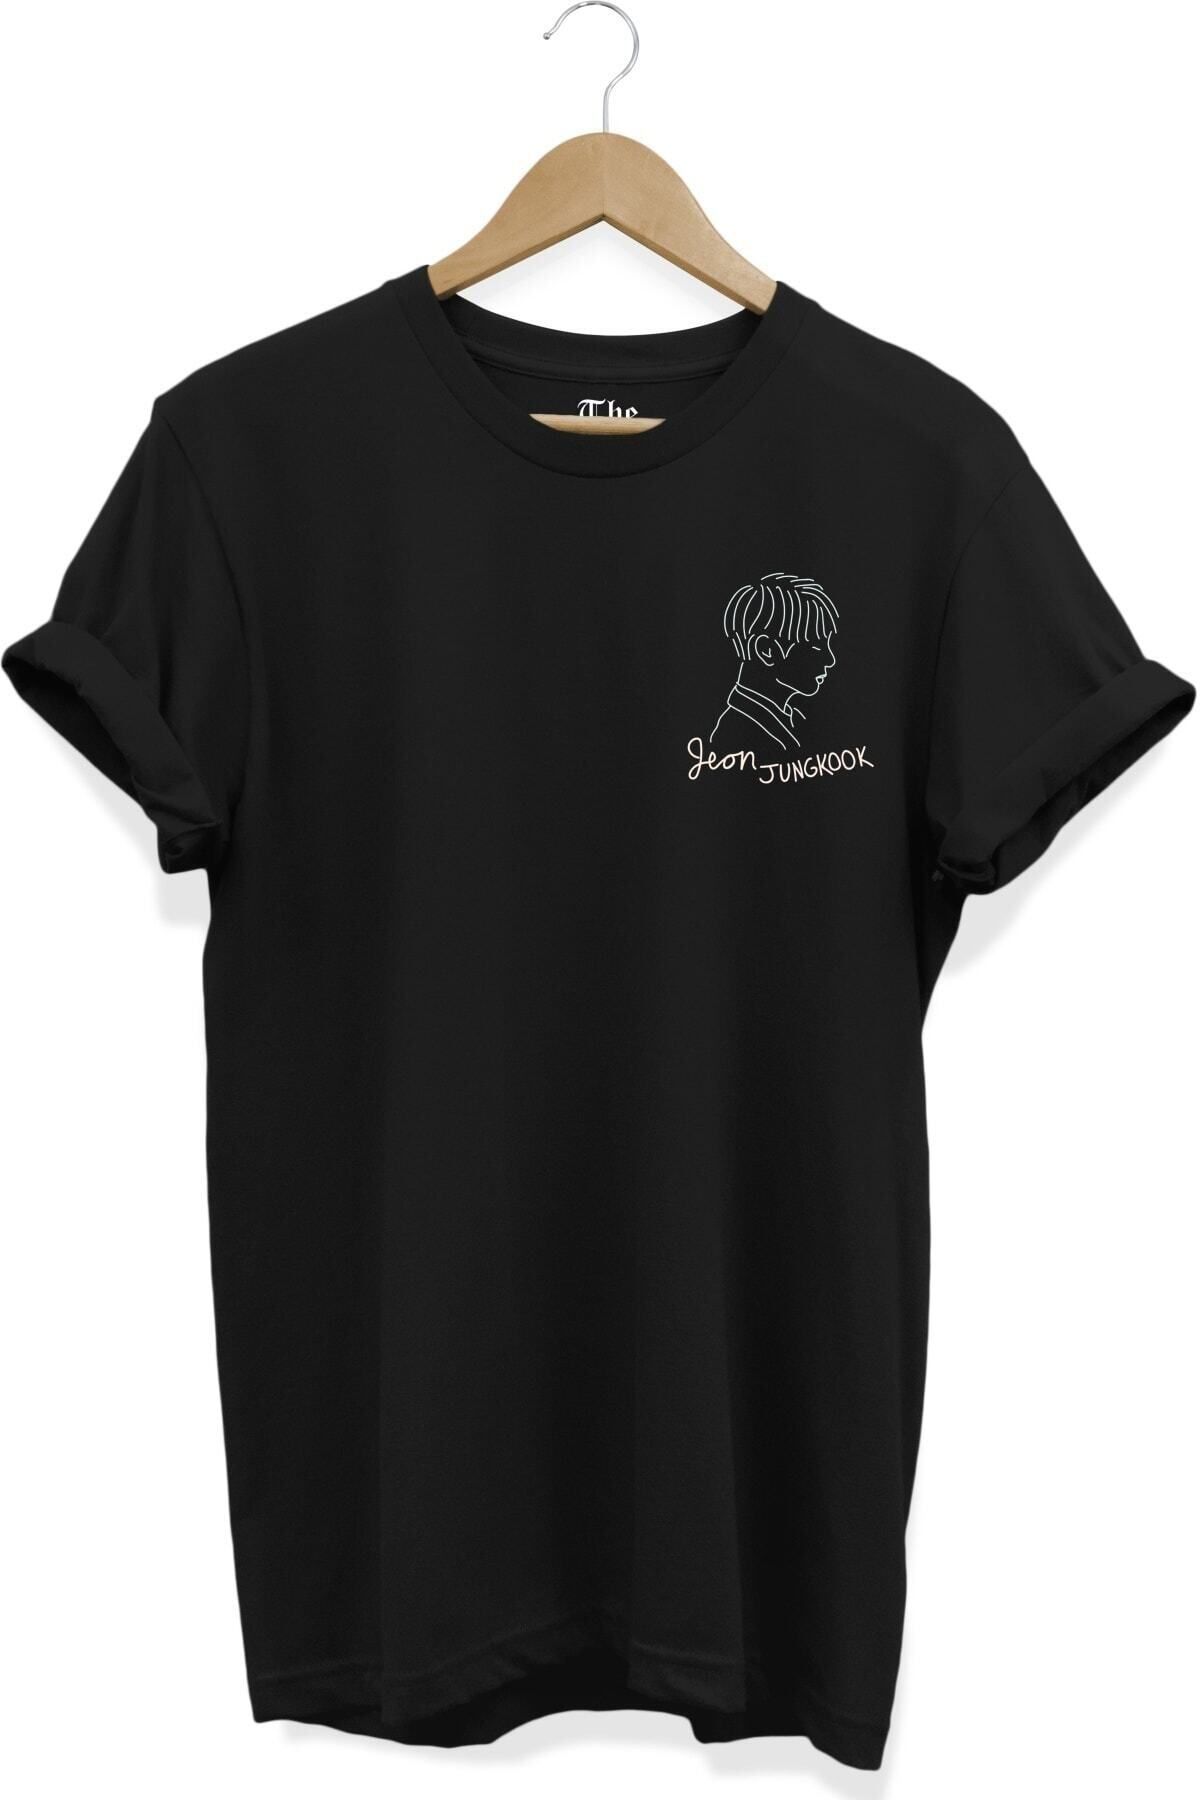 ZOKAWEAR Unisex Bol Kalıp Siyah Bts Grubu Jungkook Baskılı Kısa Kollu T-shirt